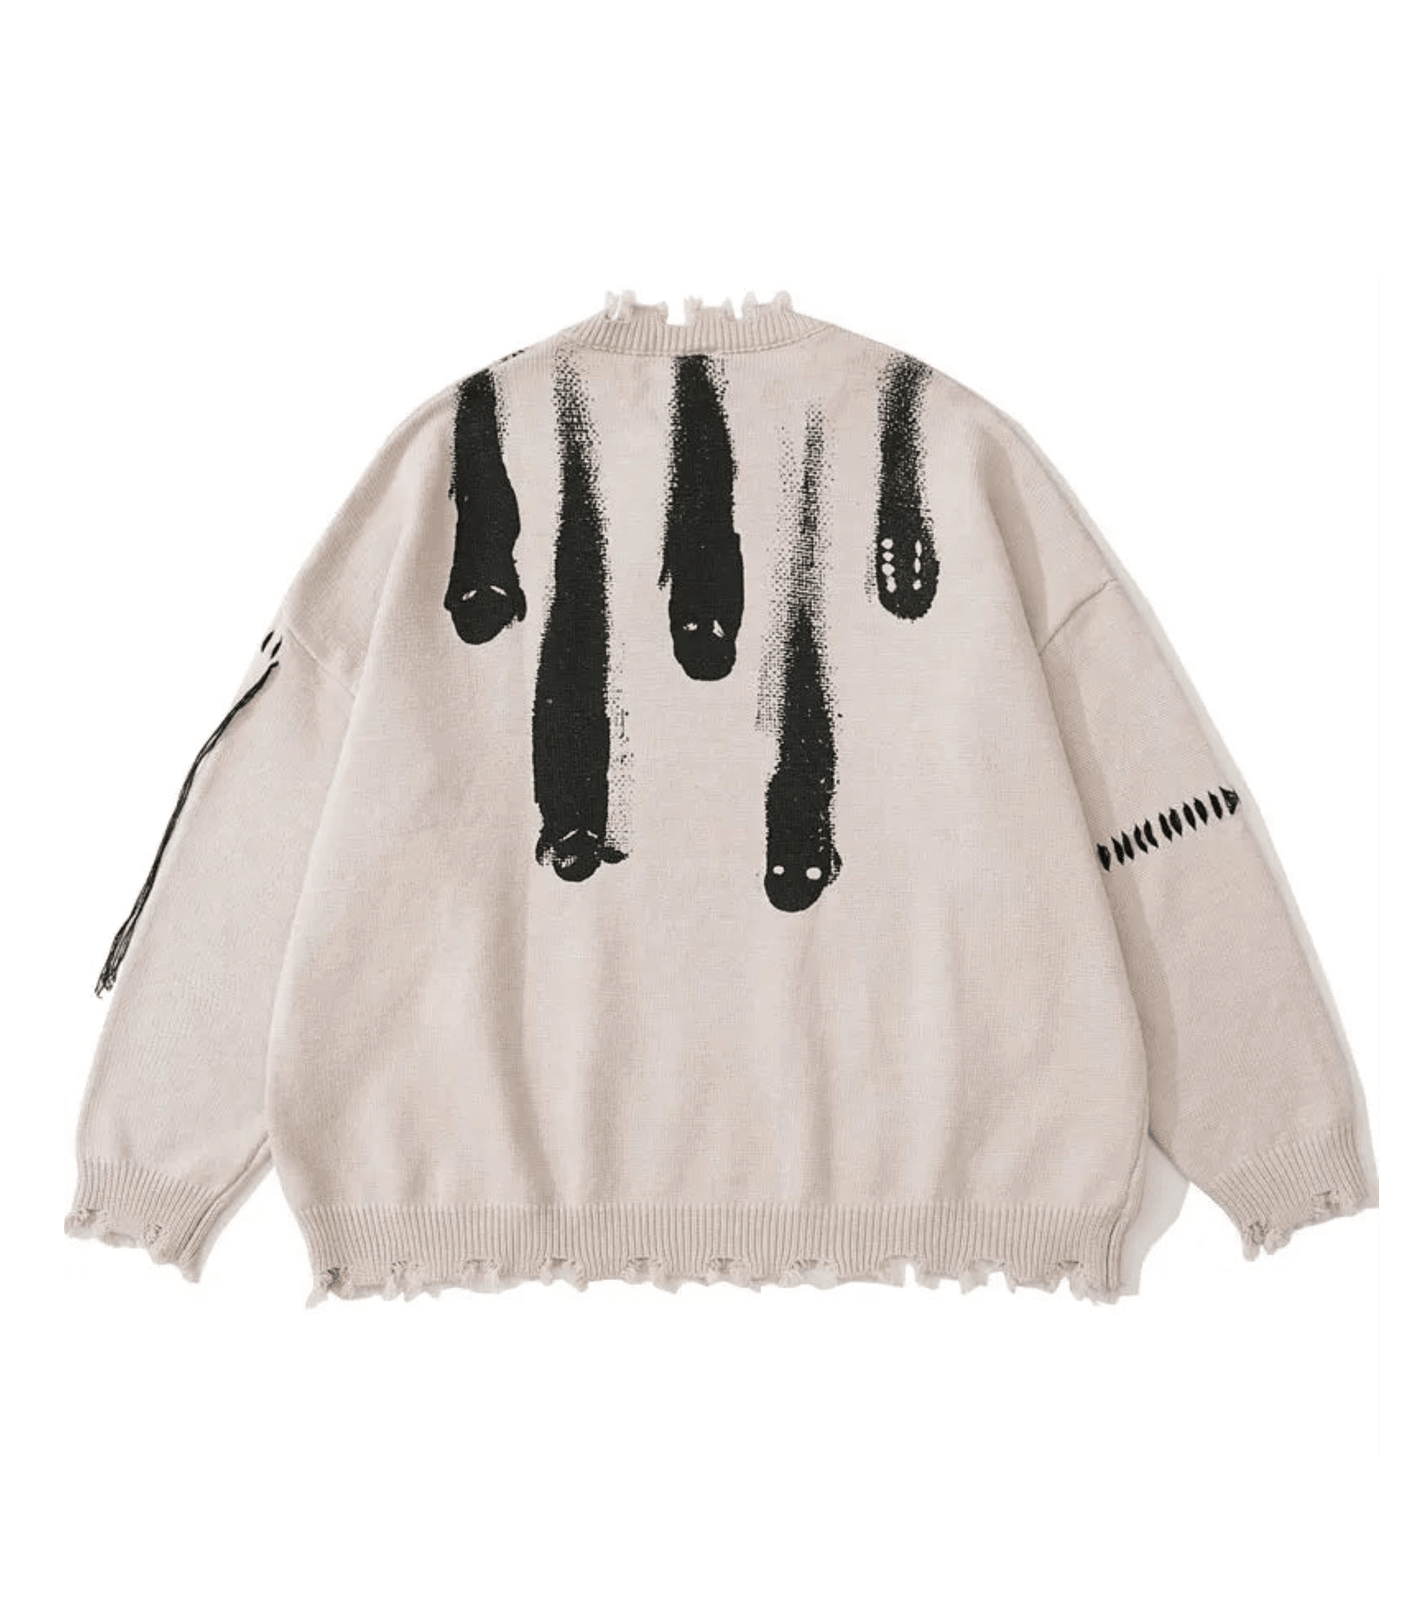 Artisanal Brushstroke Knit Sweater: Vintage Streetwear Elegance